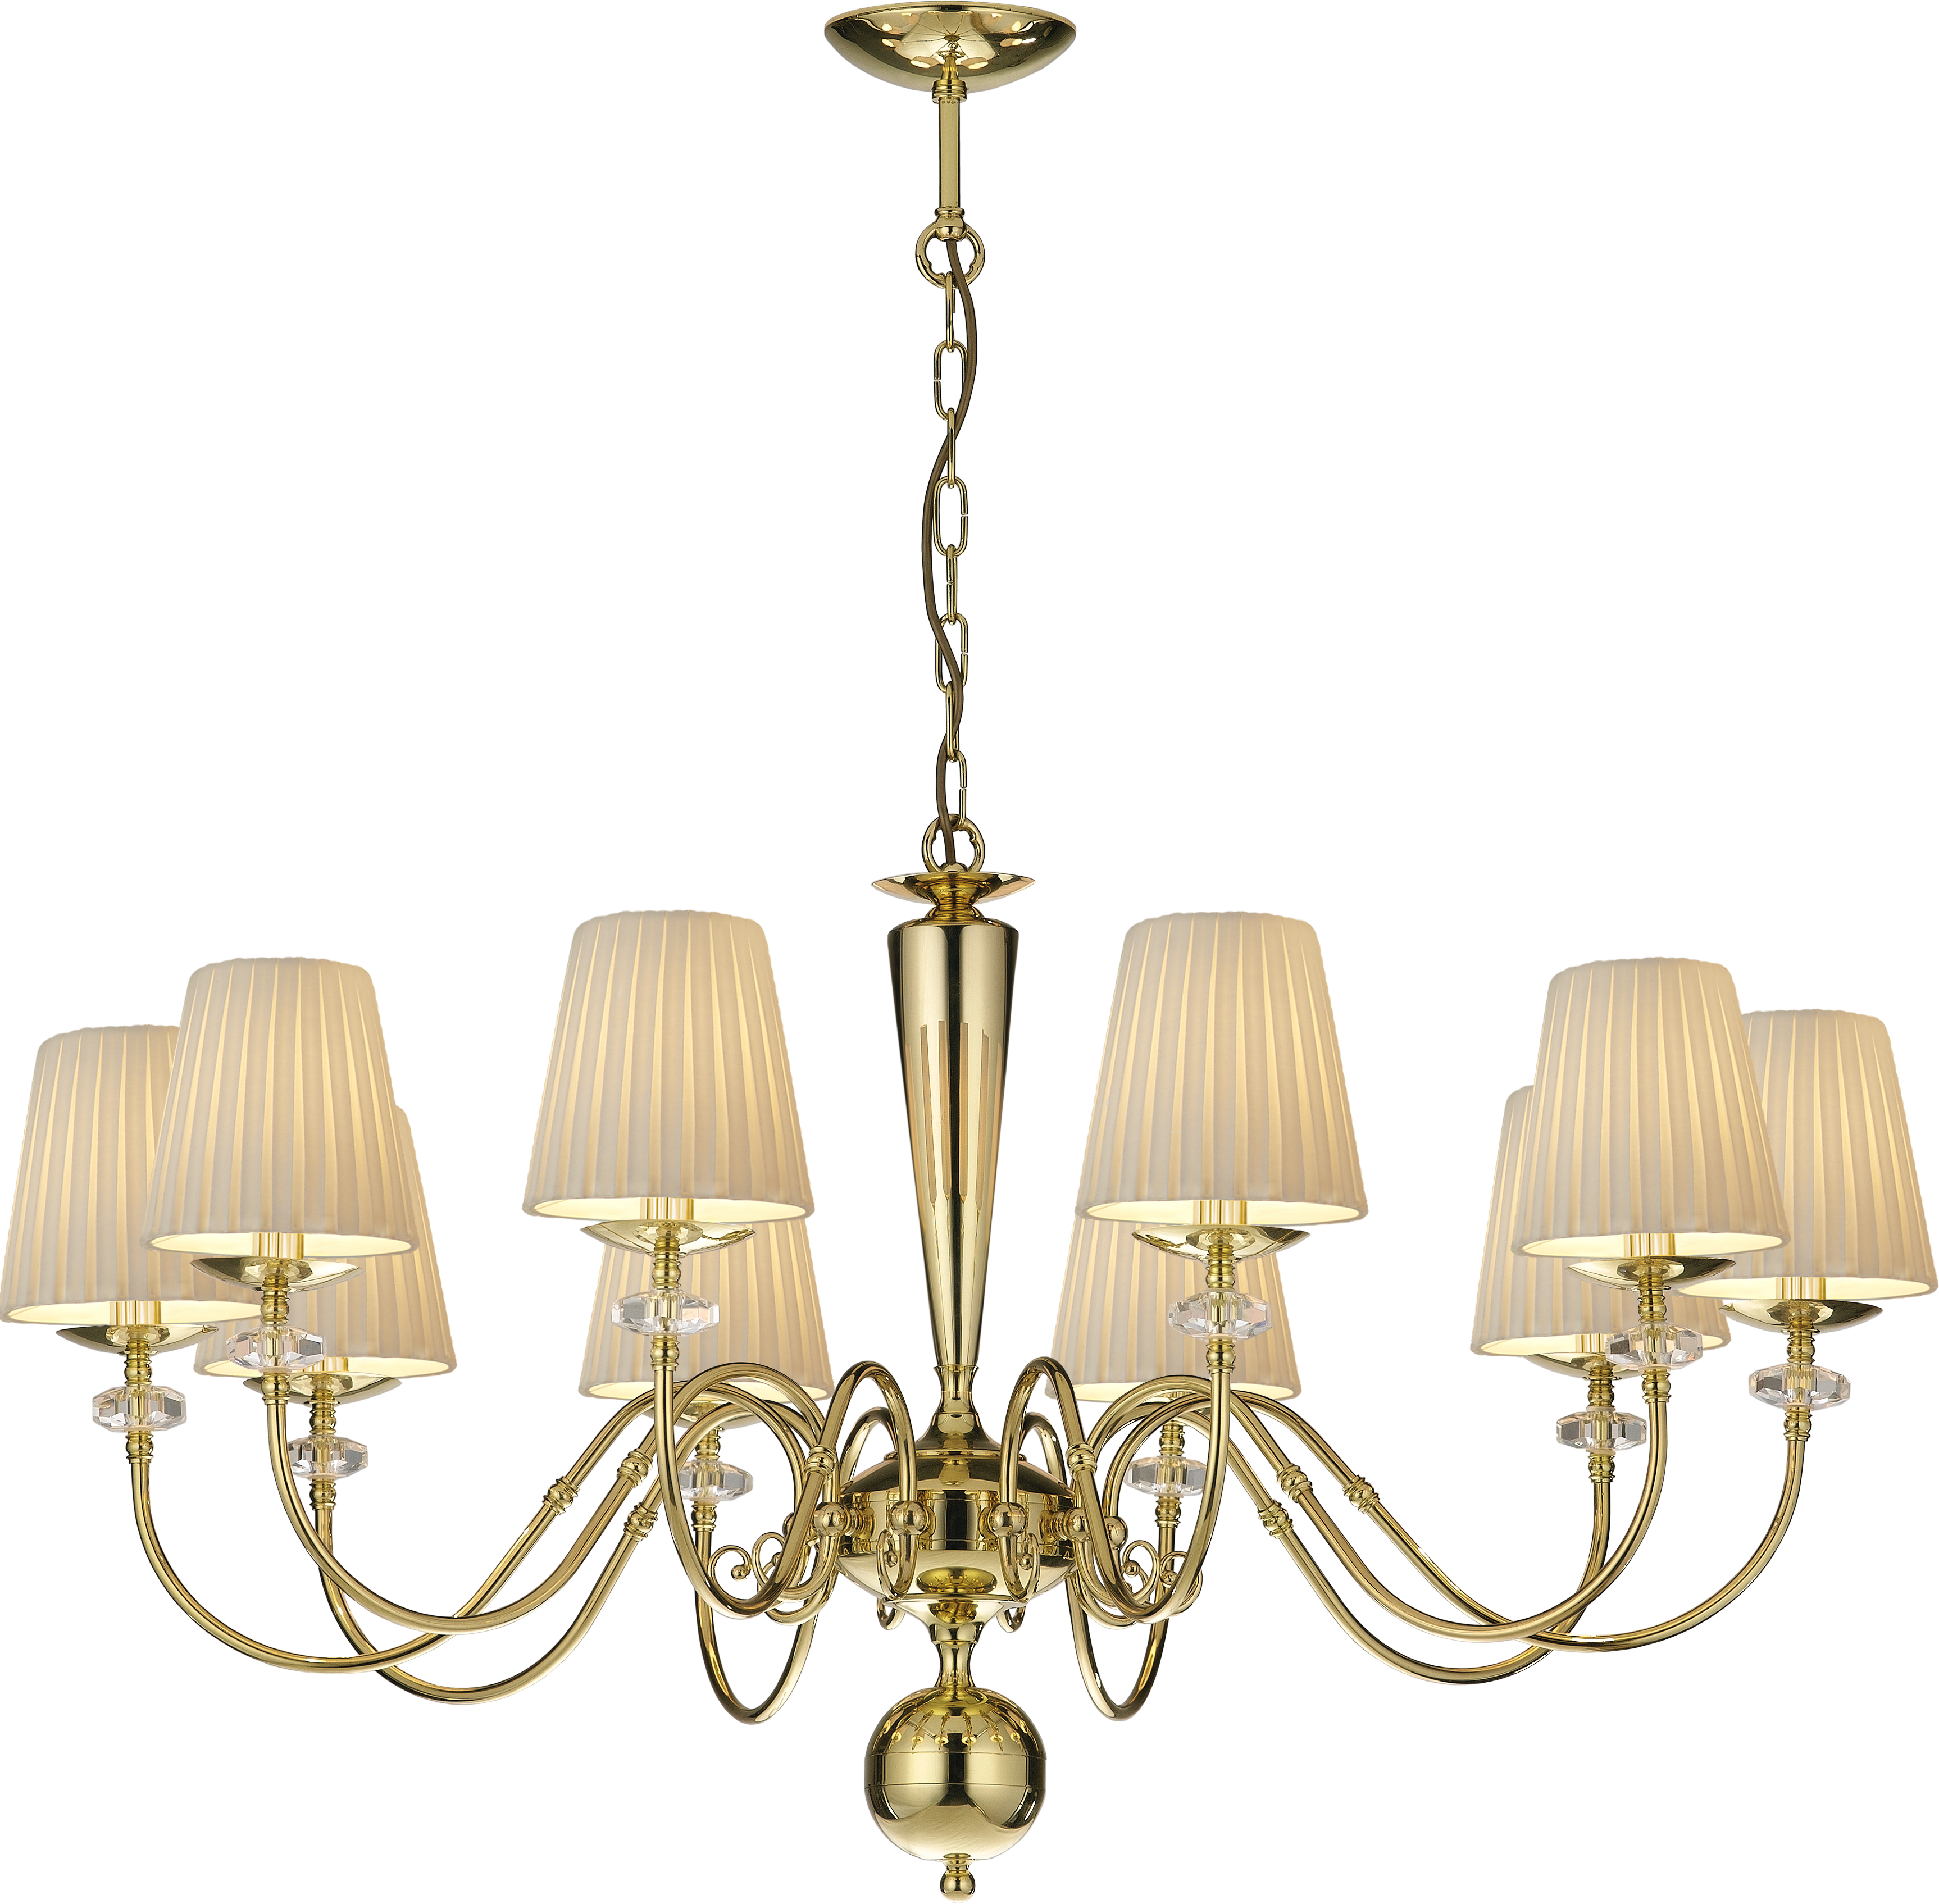 10-flame chandelier lamp. Lilosa AMPLEX